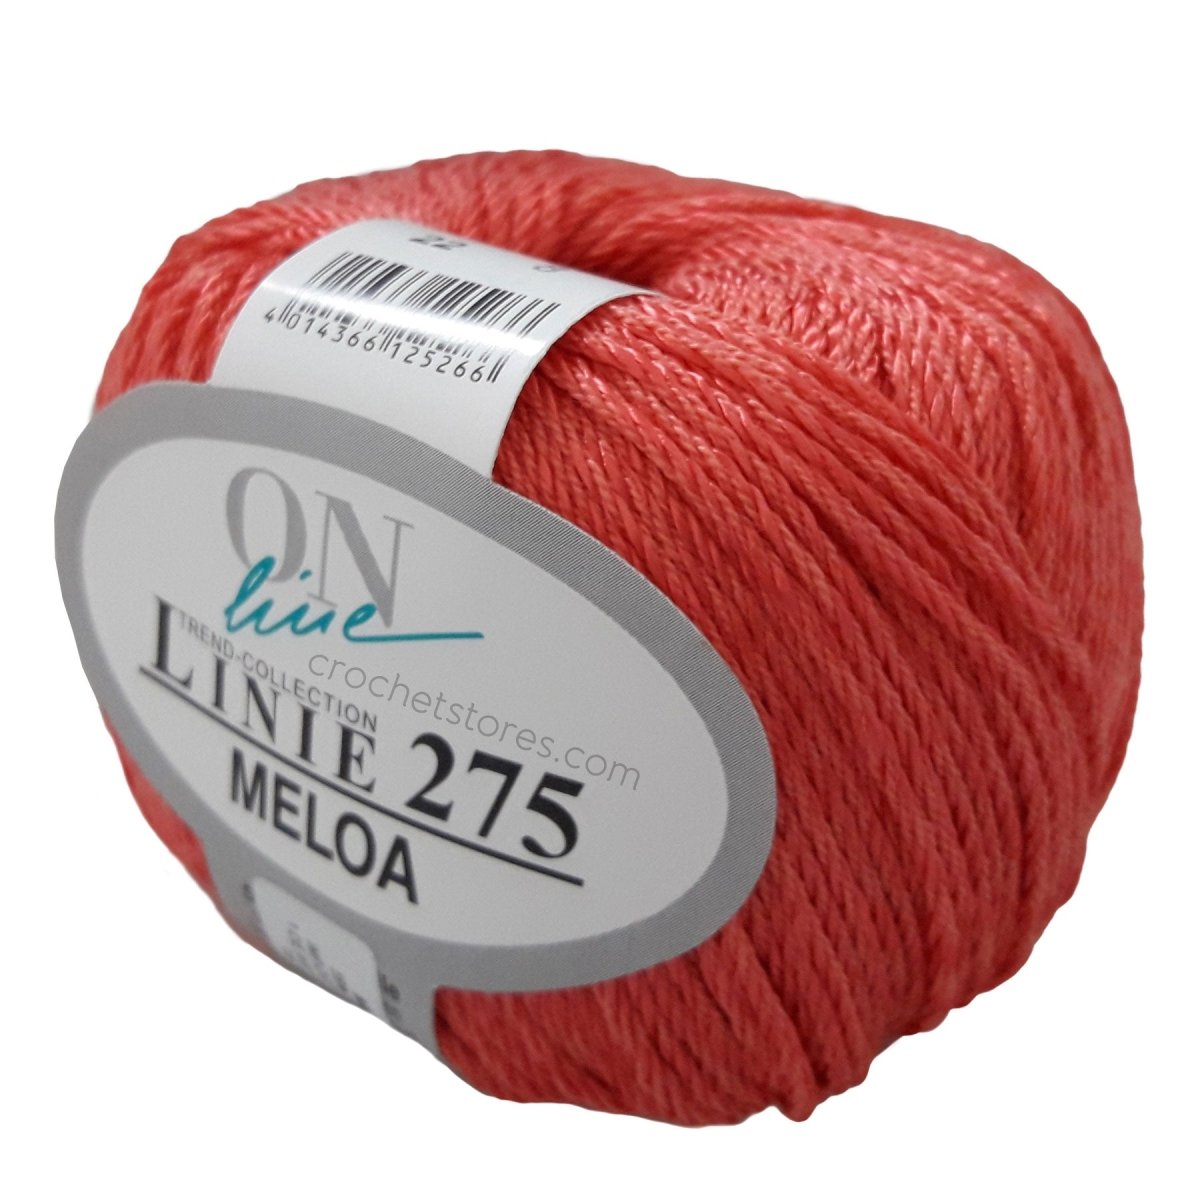 MELOA - Crochetstores110275-00224014366125266